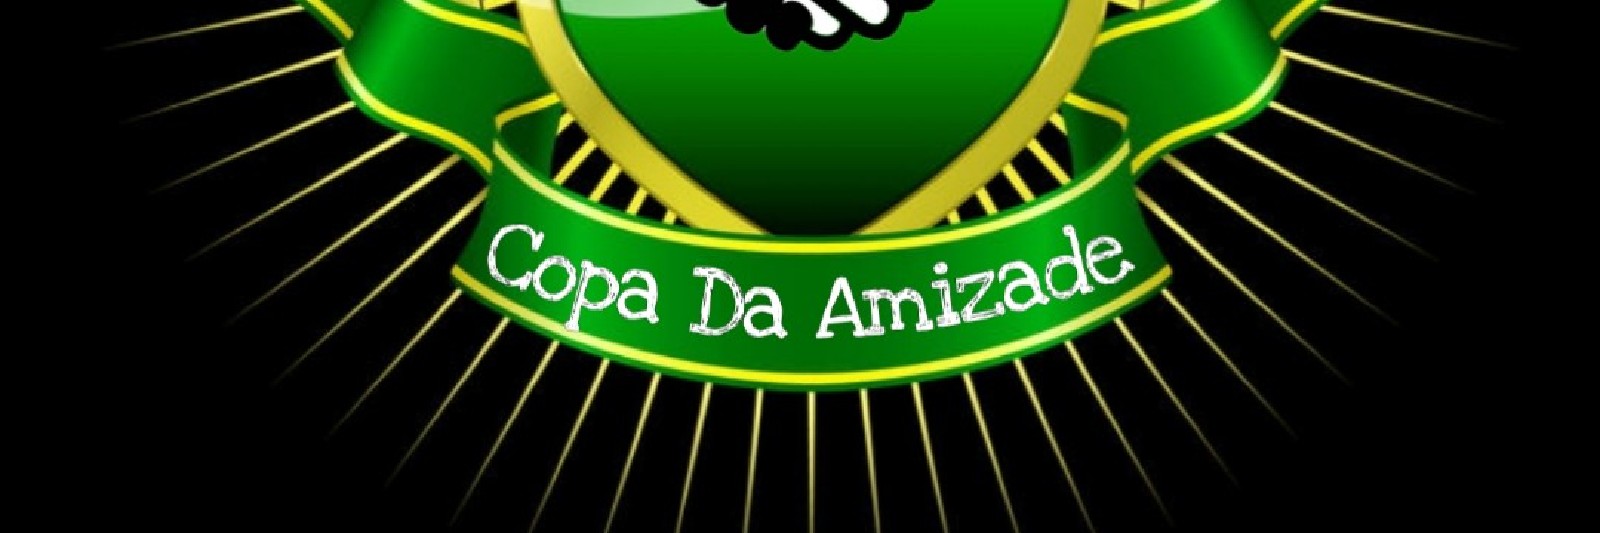 Copa Da Amizade Guarujá